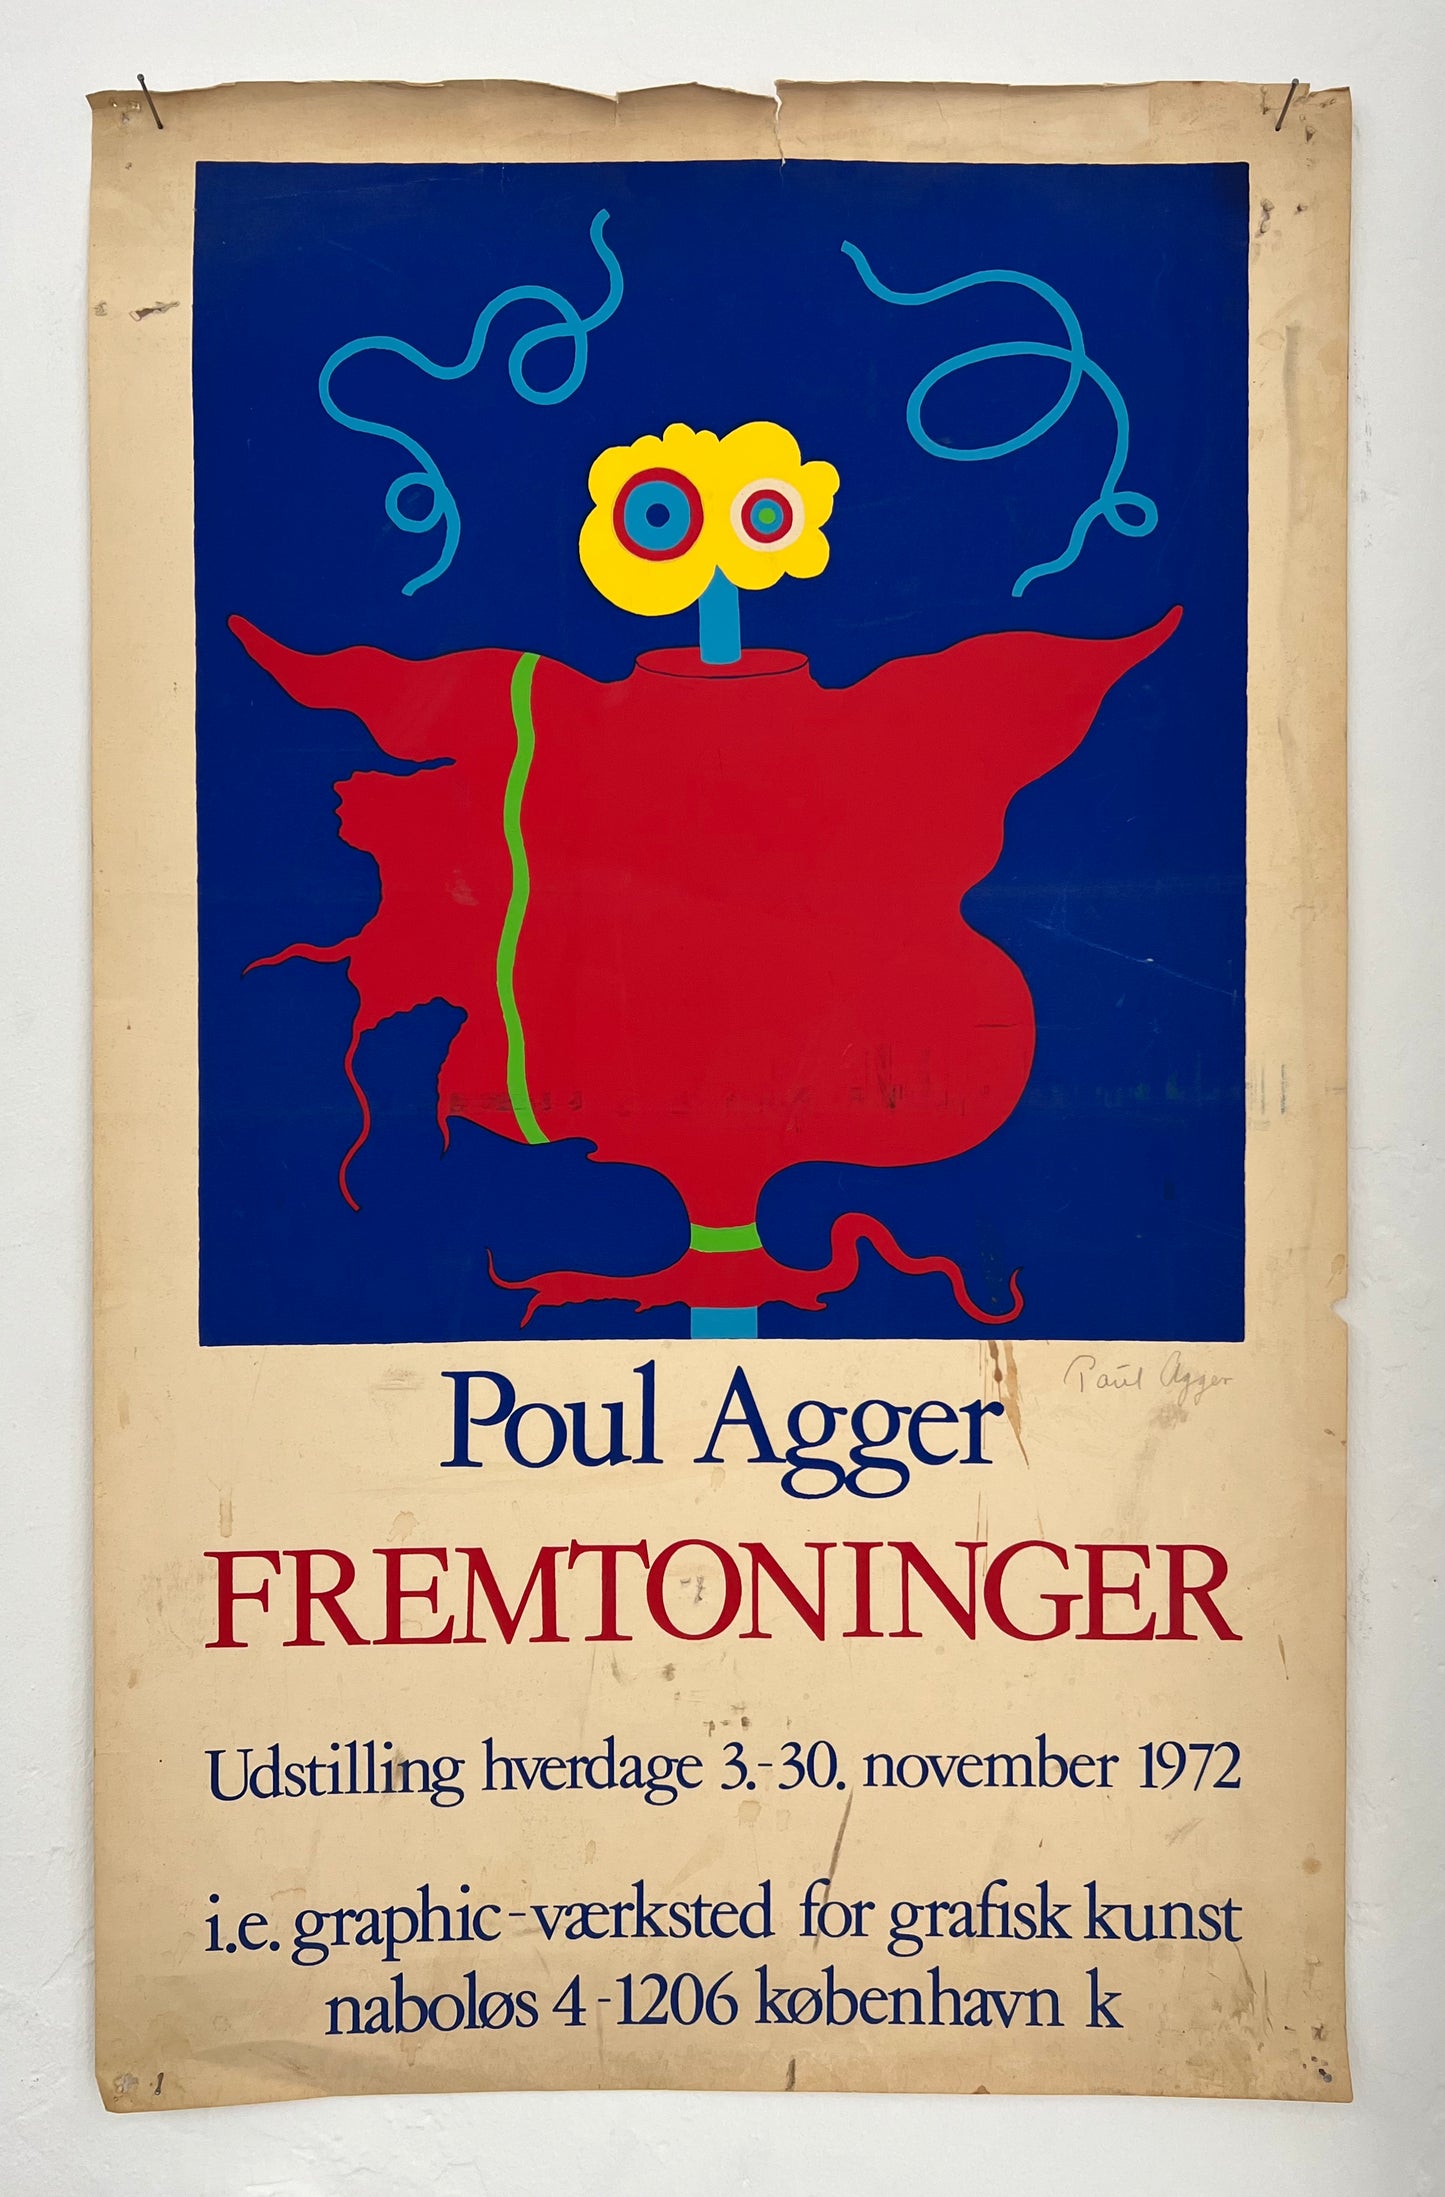 Poul Agger. “Fremtoninger”, 1972